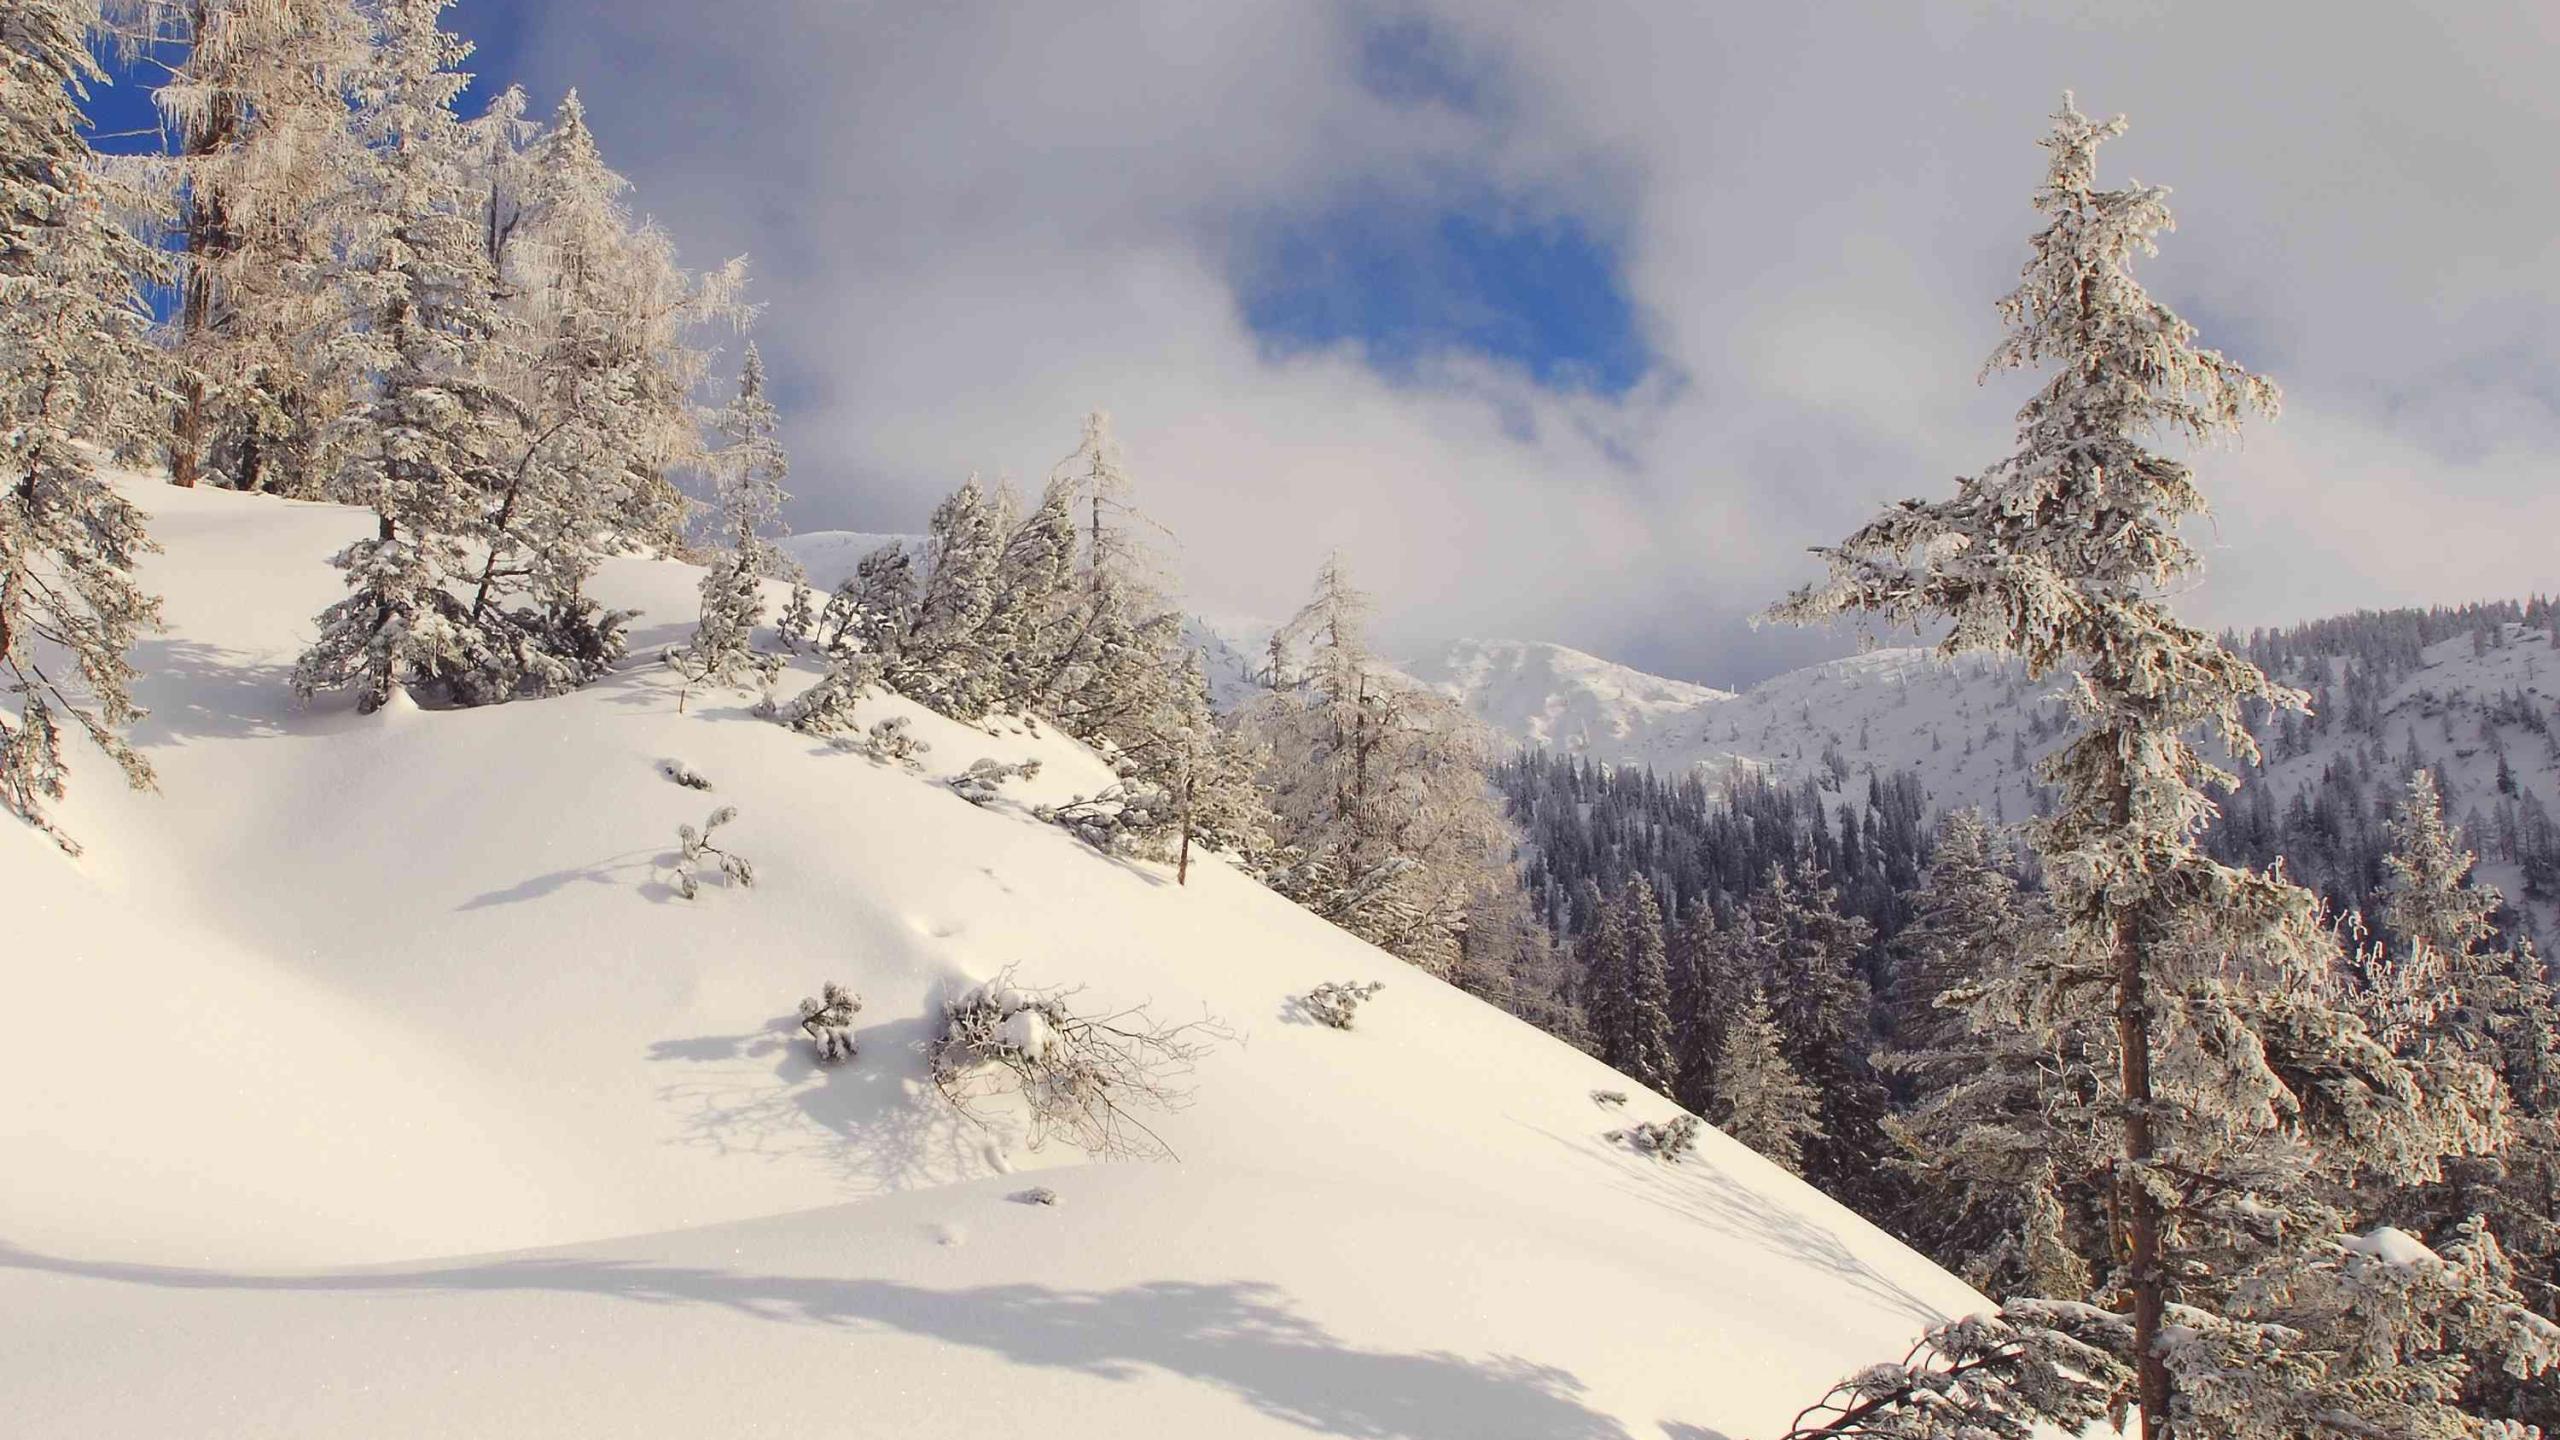 Latschen und Lärchen ragen im Sengengebirge aus einer dicken Schneedecke heraus